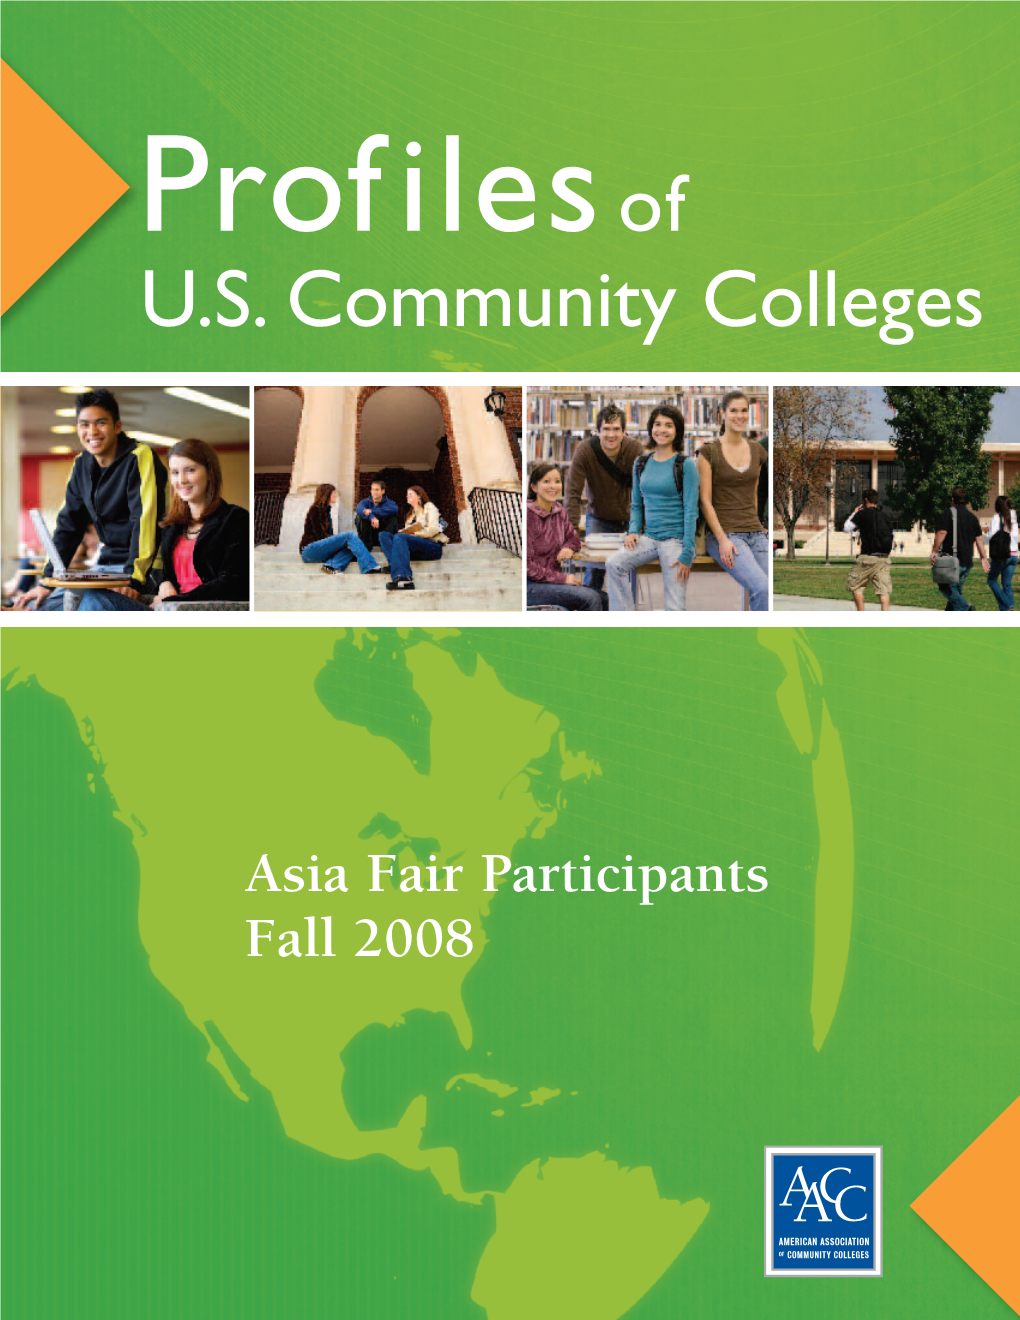 U.S. Community Colleges